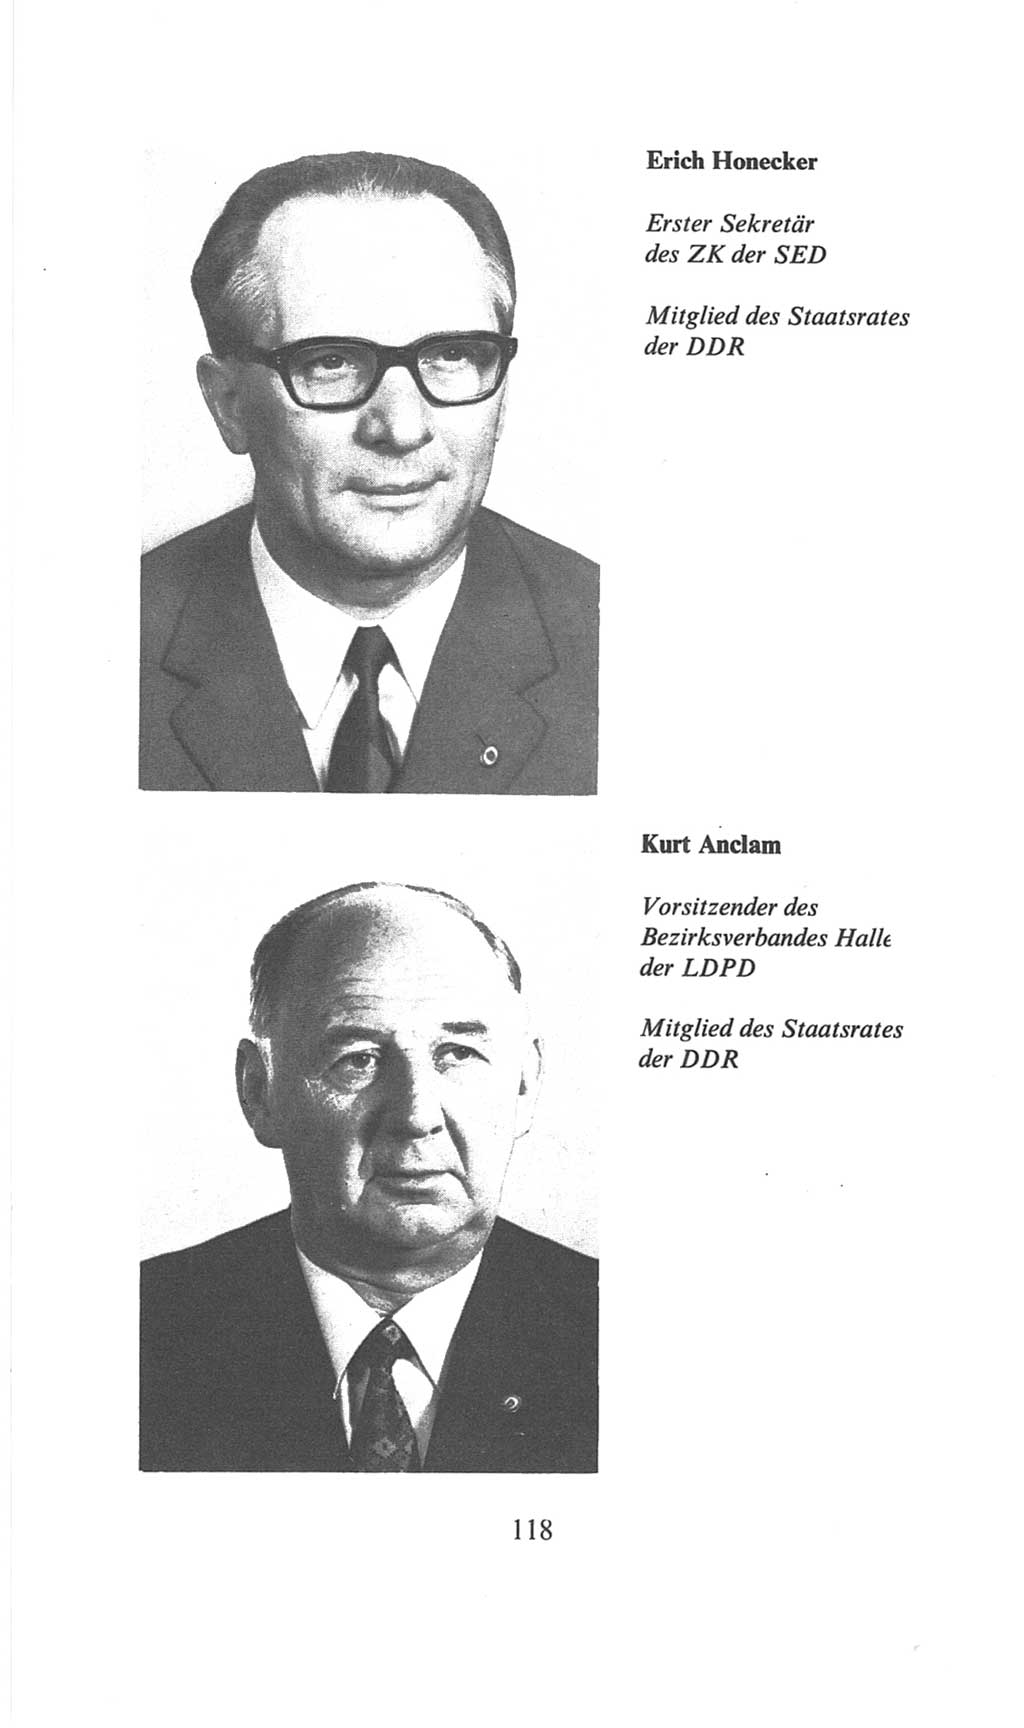 Volkskammer (VK) der Deutschen Demokratischen Republik (DDR), 6. Wahlperiode 1971-1976, Seite 118 (VK. DDR 6. WP. 1971-1976, S. 118)